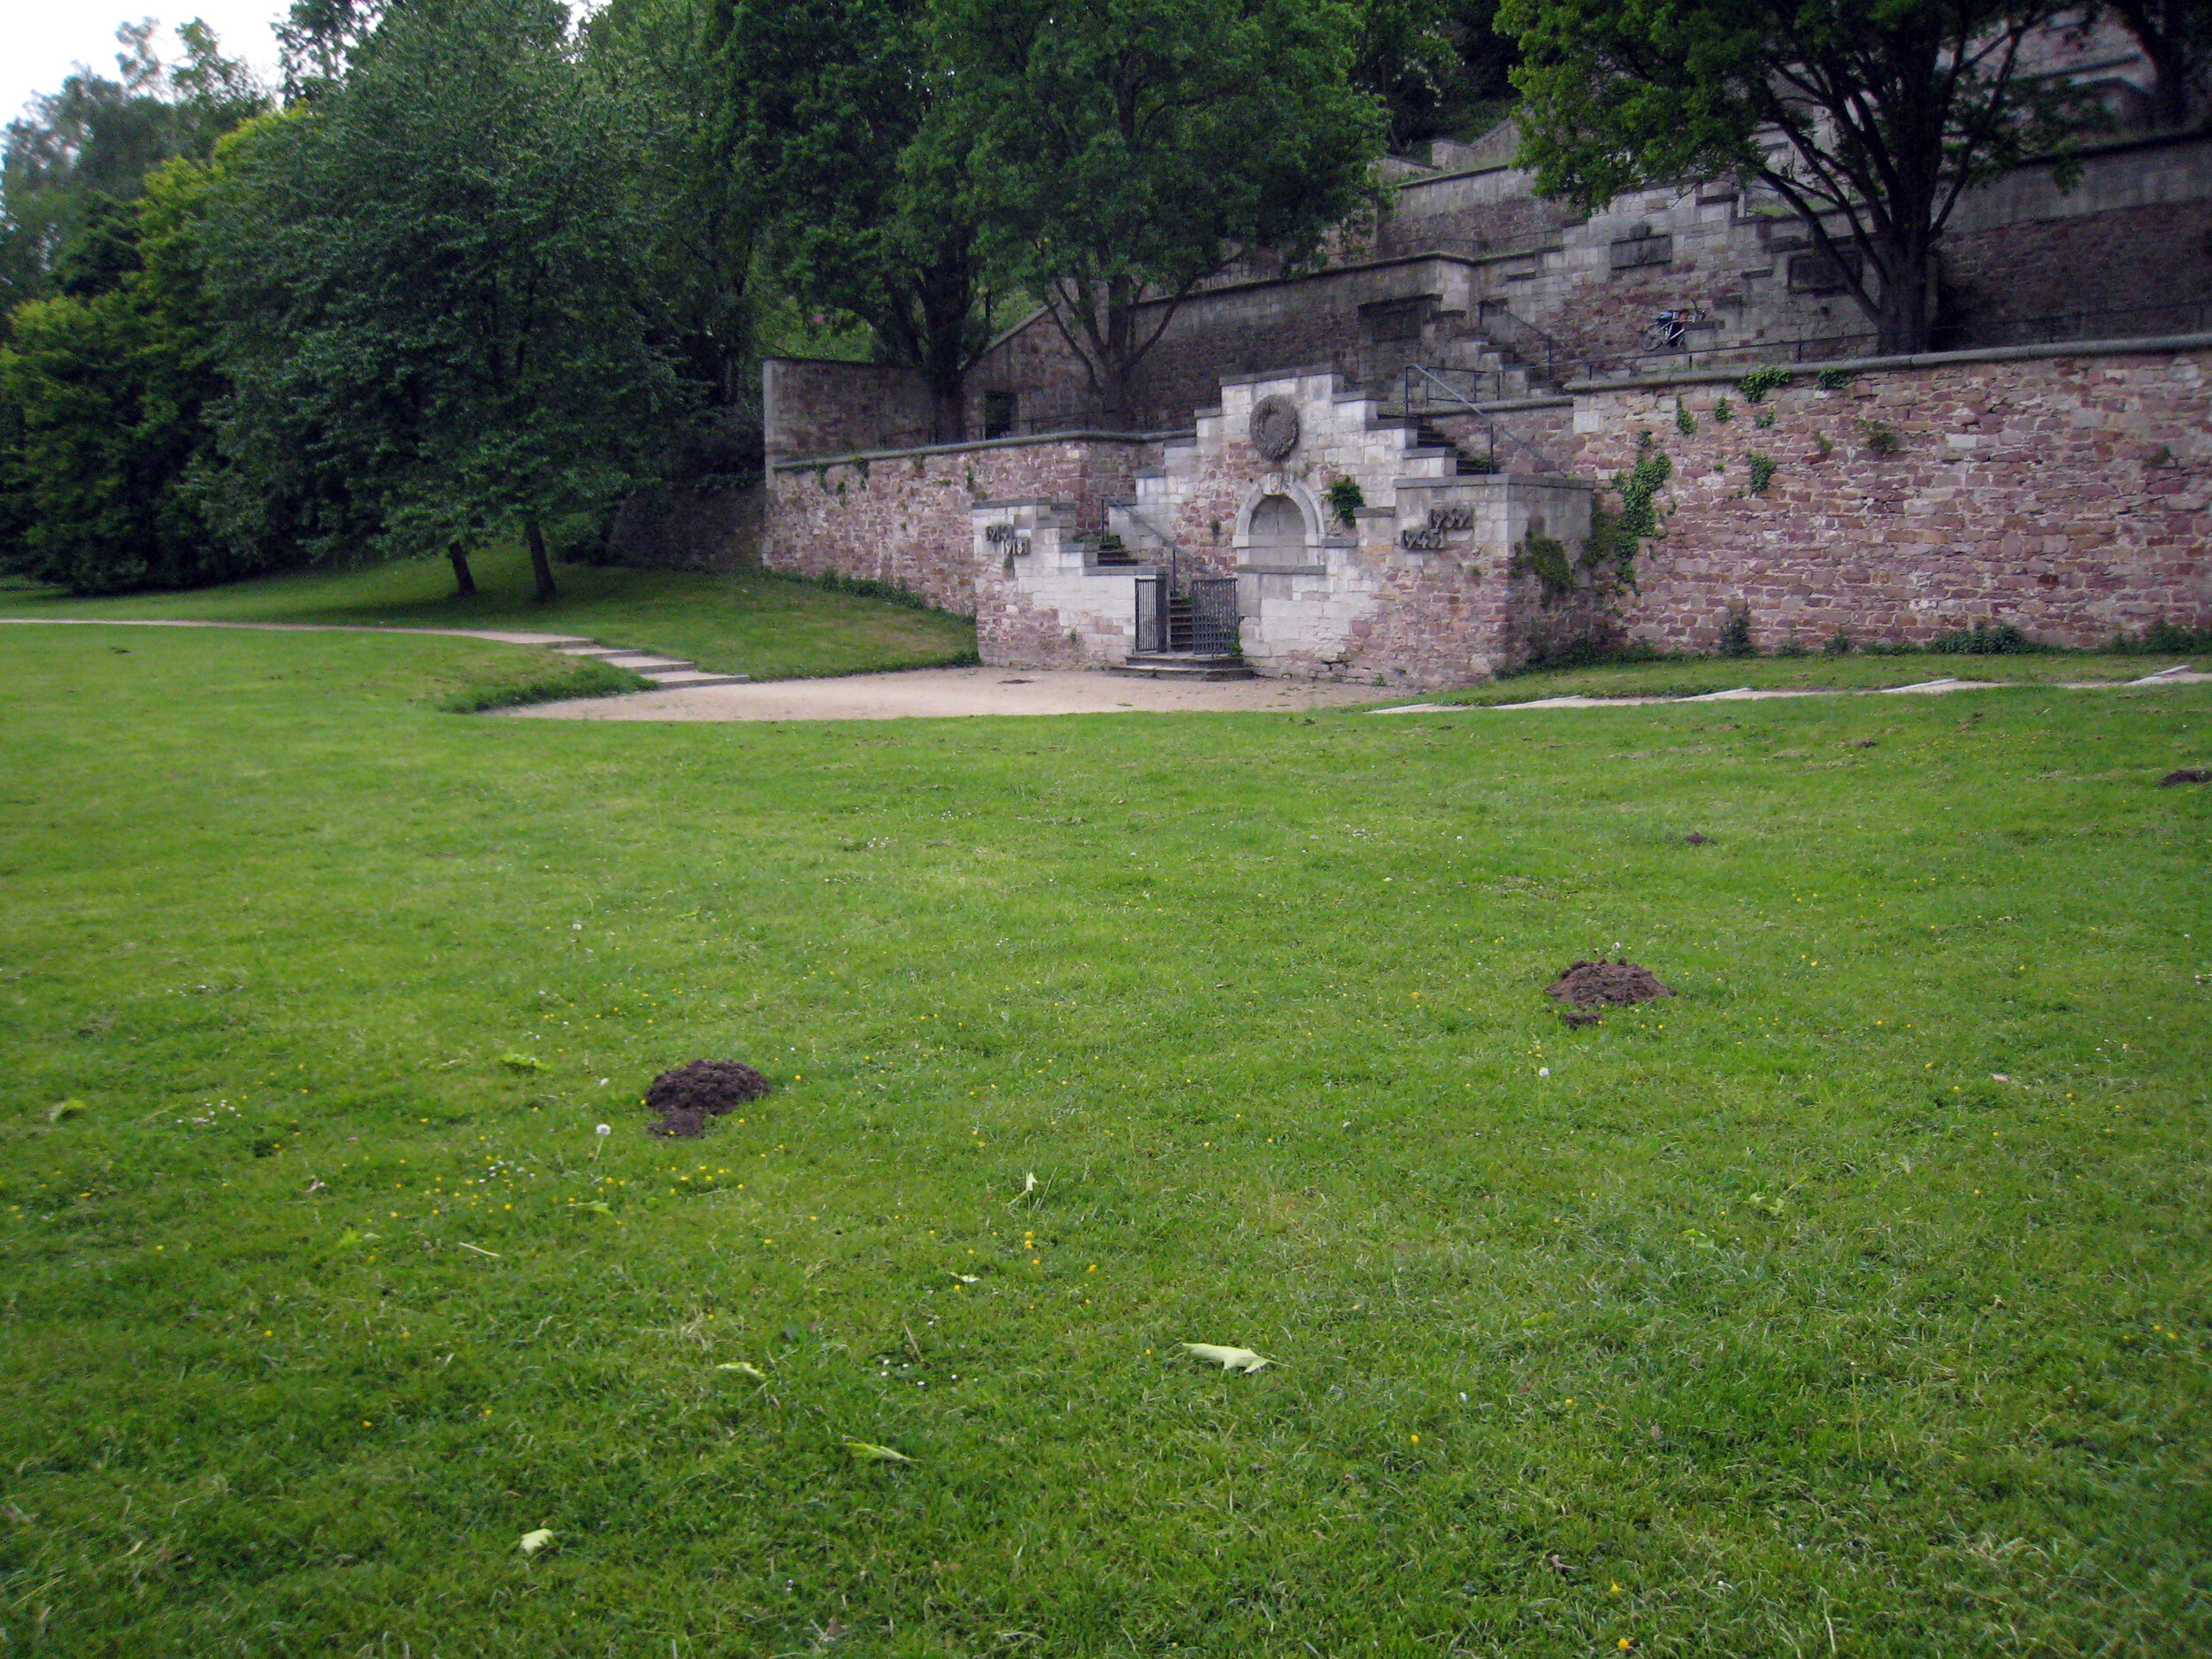  Molehills in front of a World War I memorial, Karlsaue Park.  